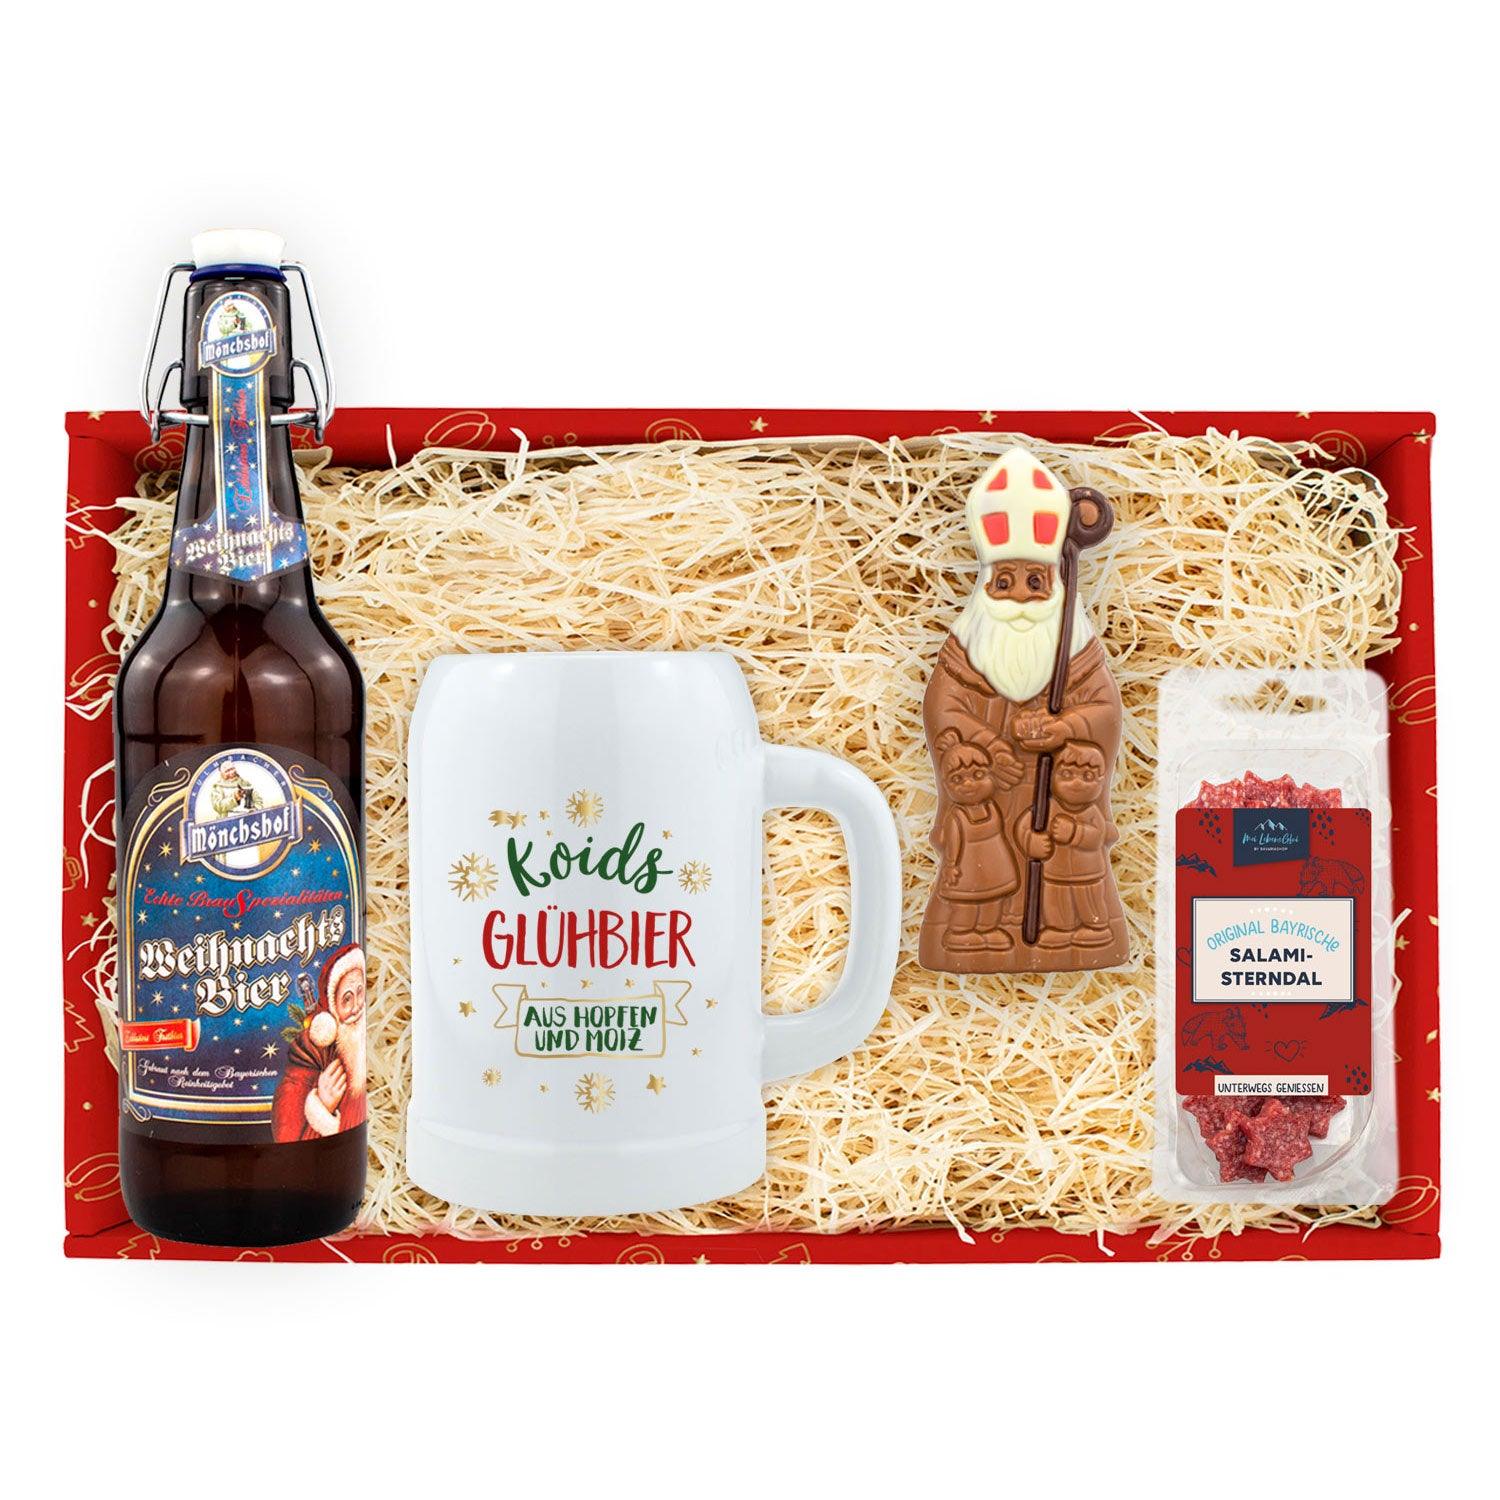 Weihnachtsbox "Koids Glüh-Bier" - bavariashop - mei LebensGfui